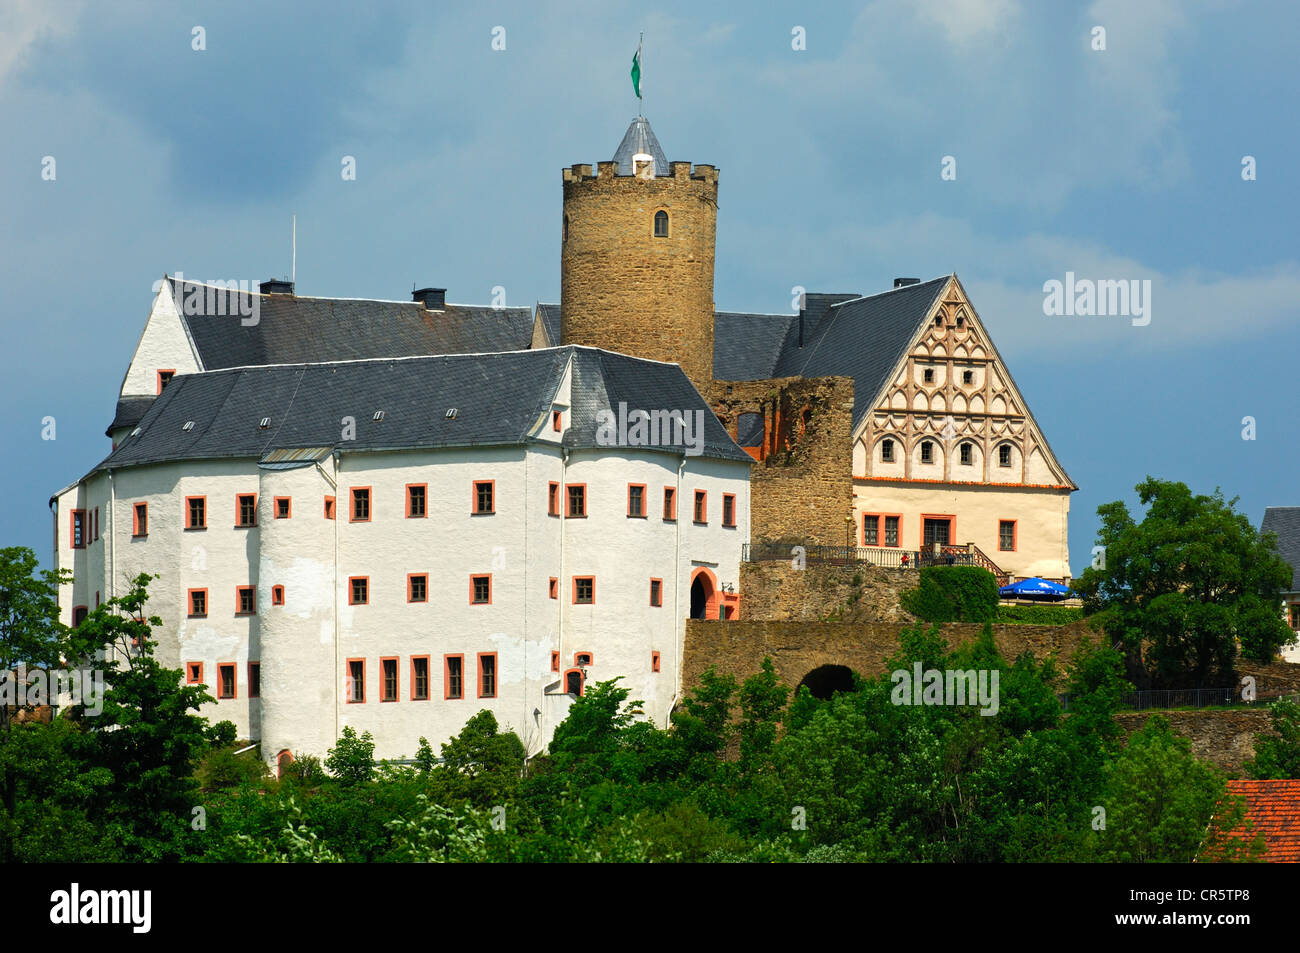 Burg Scharfenstein castle, Drebach, Erzgebirge, Ore Mountains, Saxony ...